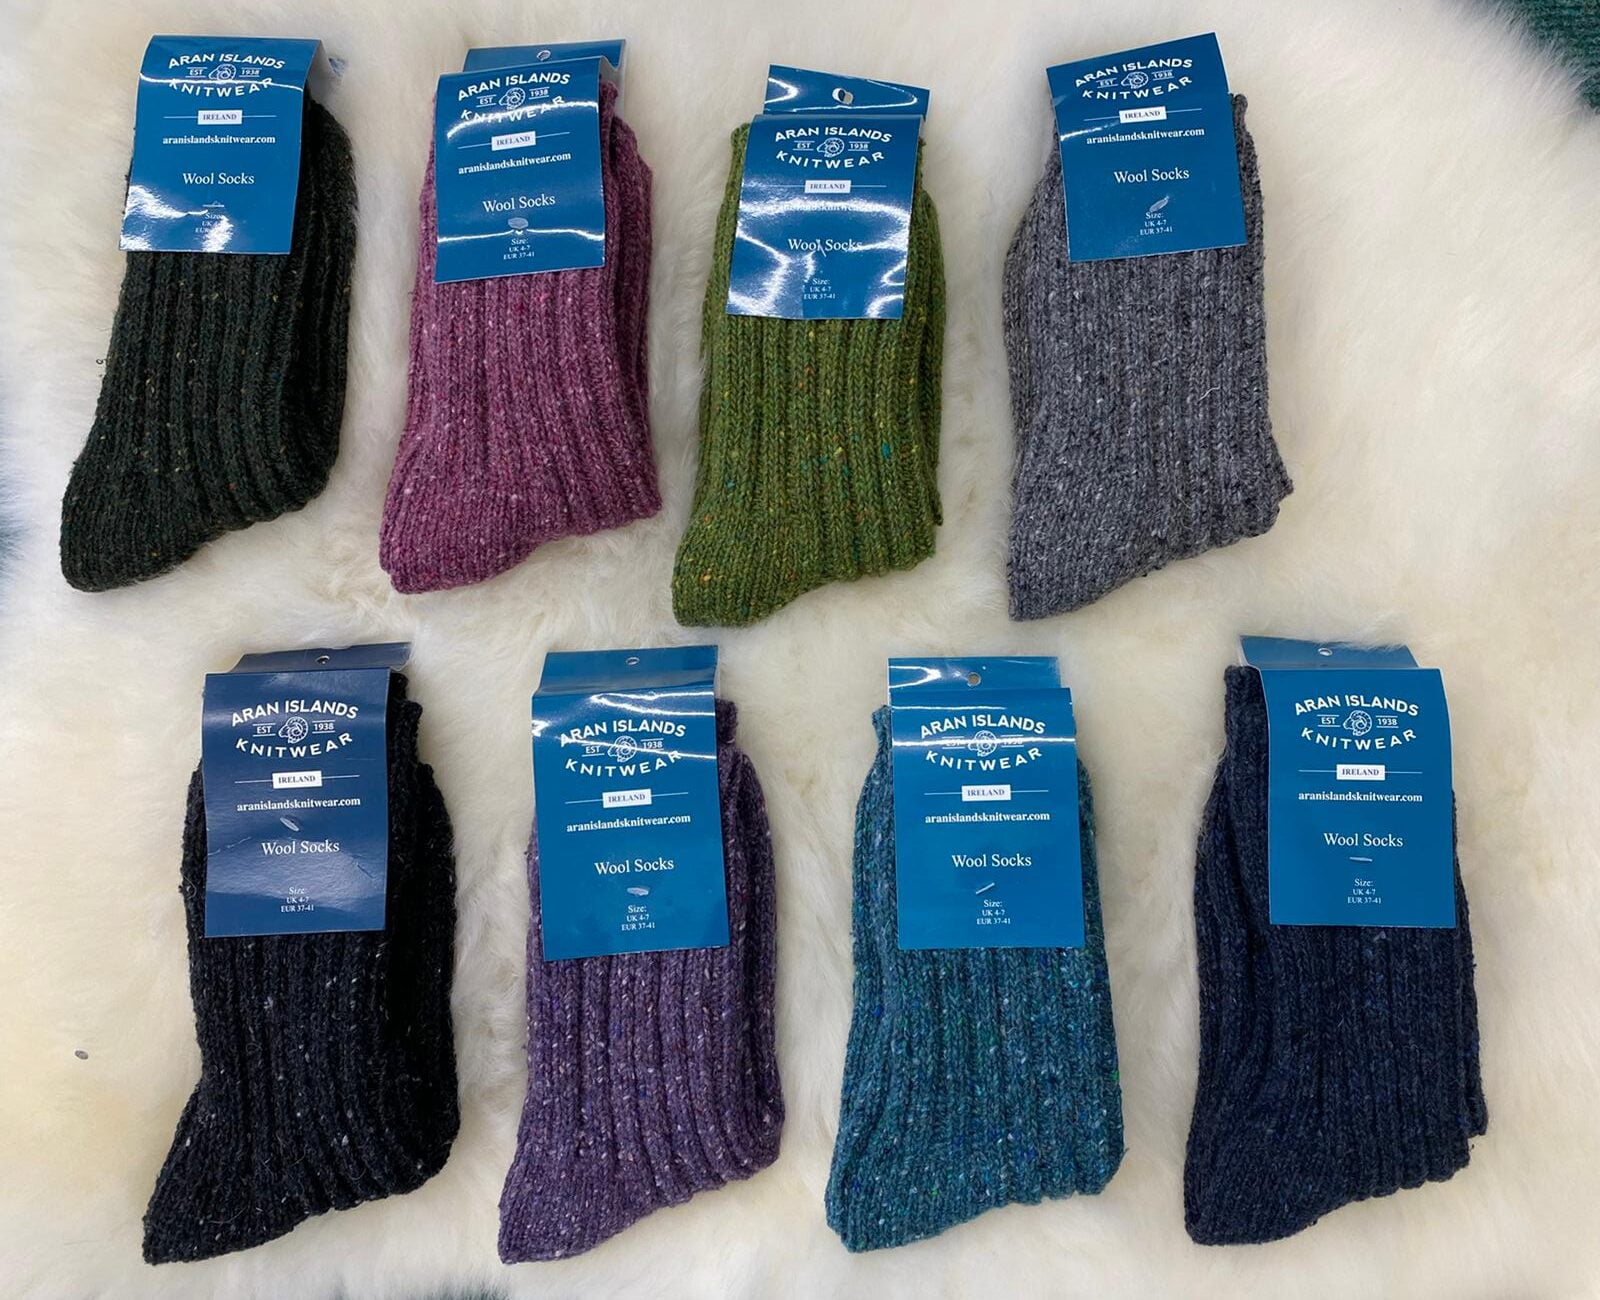 Aran Islands Knitwear Socks - Aran Islands Knitwear